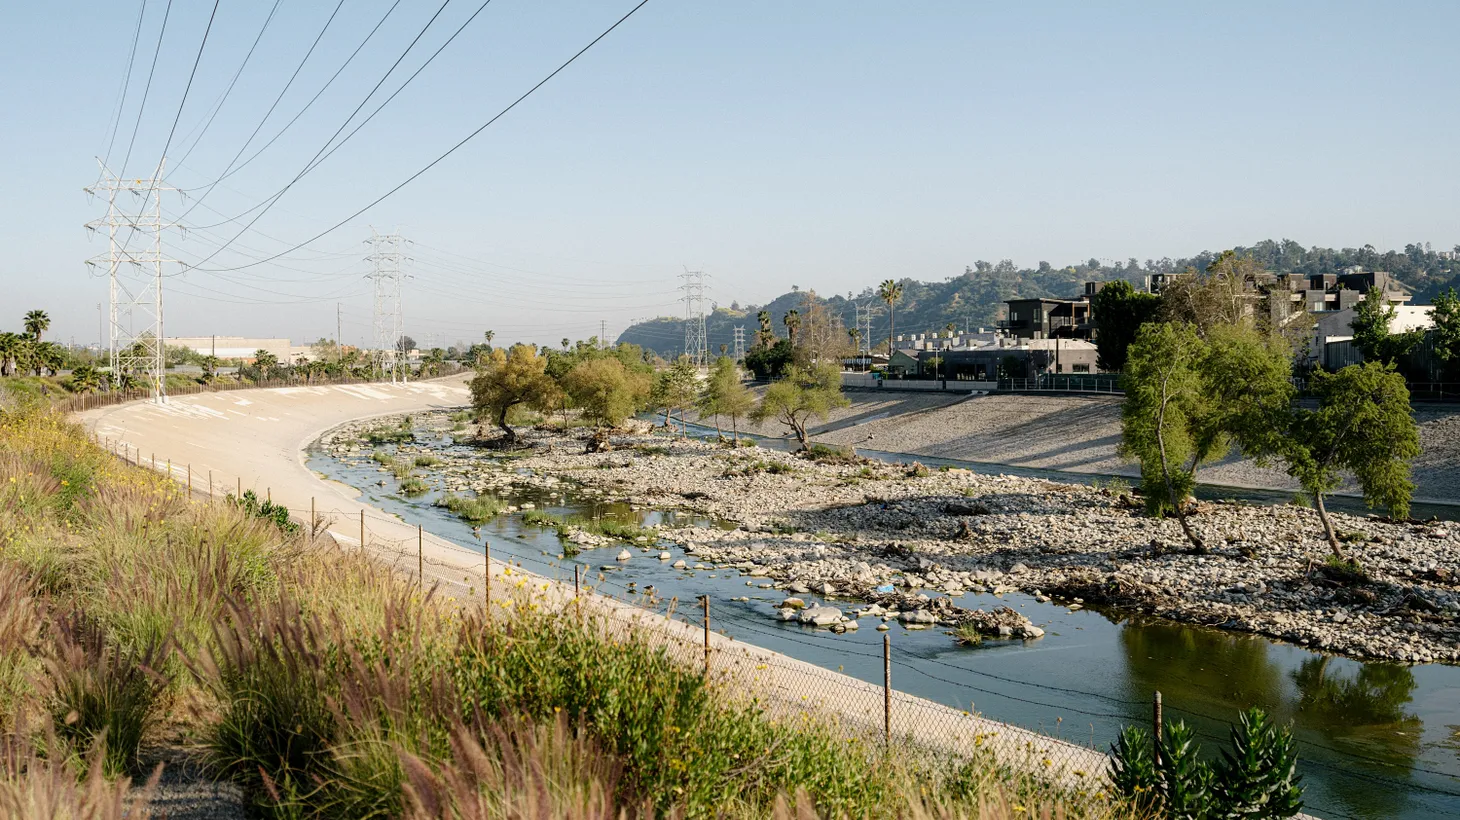 The LA River flows near the Bowtie Parcel.